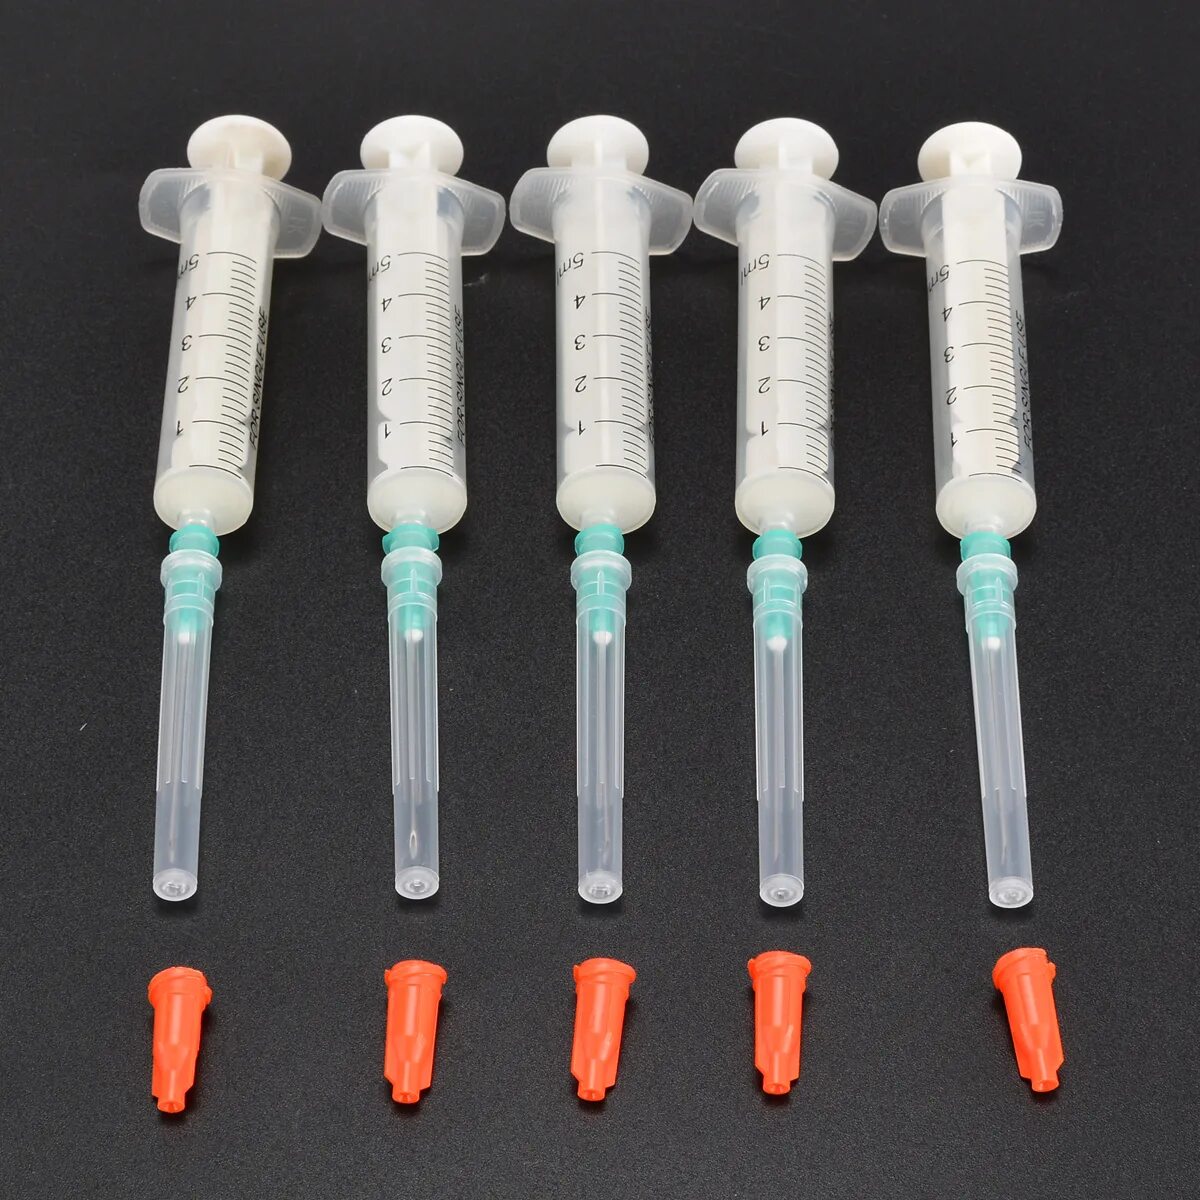 Шприцы Disposable Syringes. Шприц Westcom 5 мл. Игла Disposable Plastic Needle. Мерный шприц 5 мл.